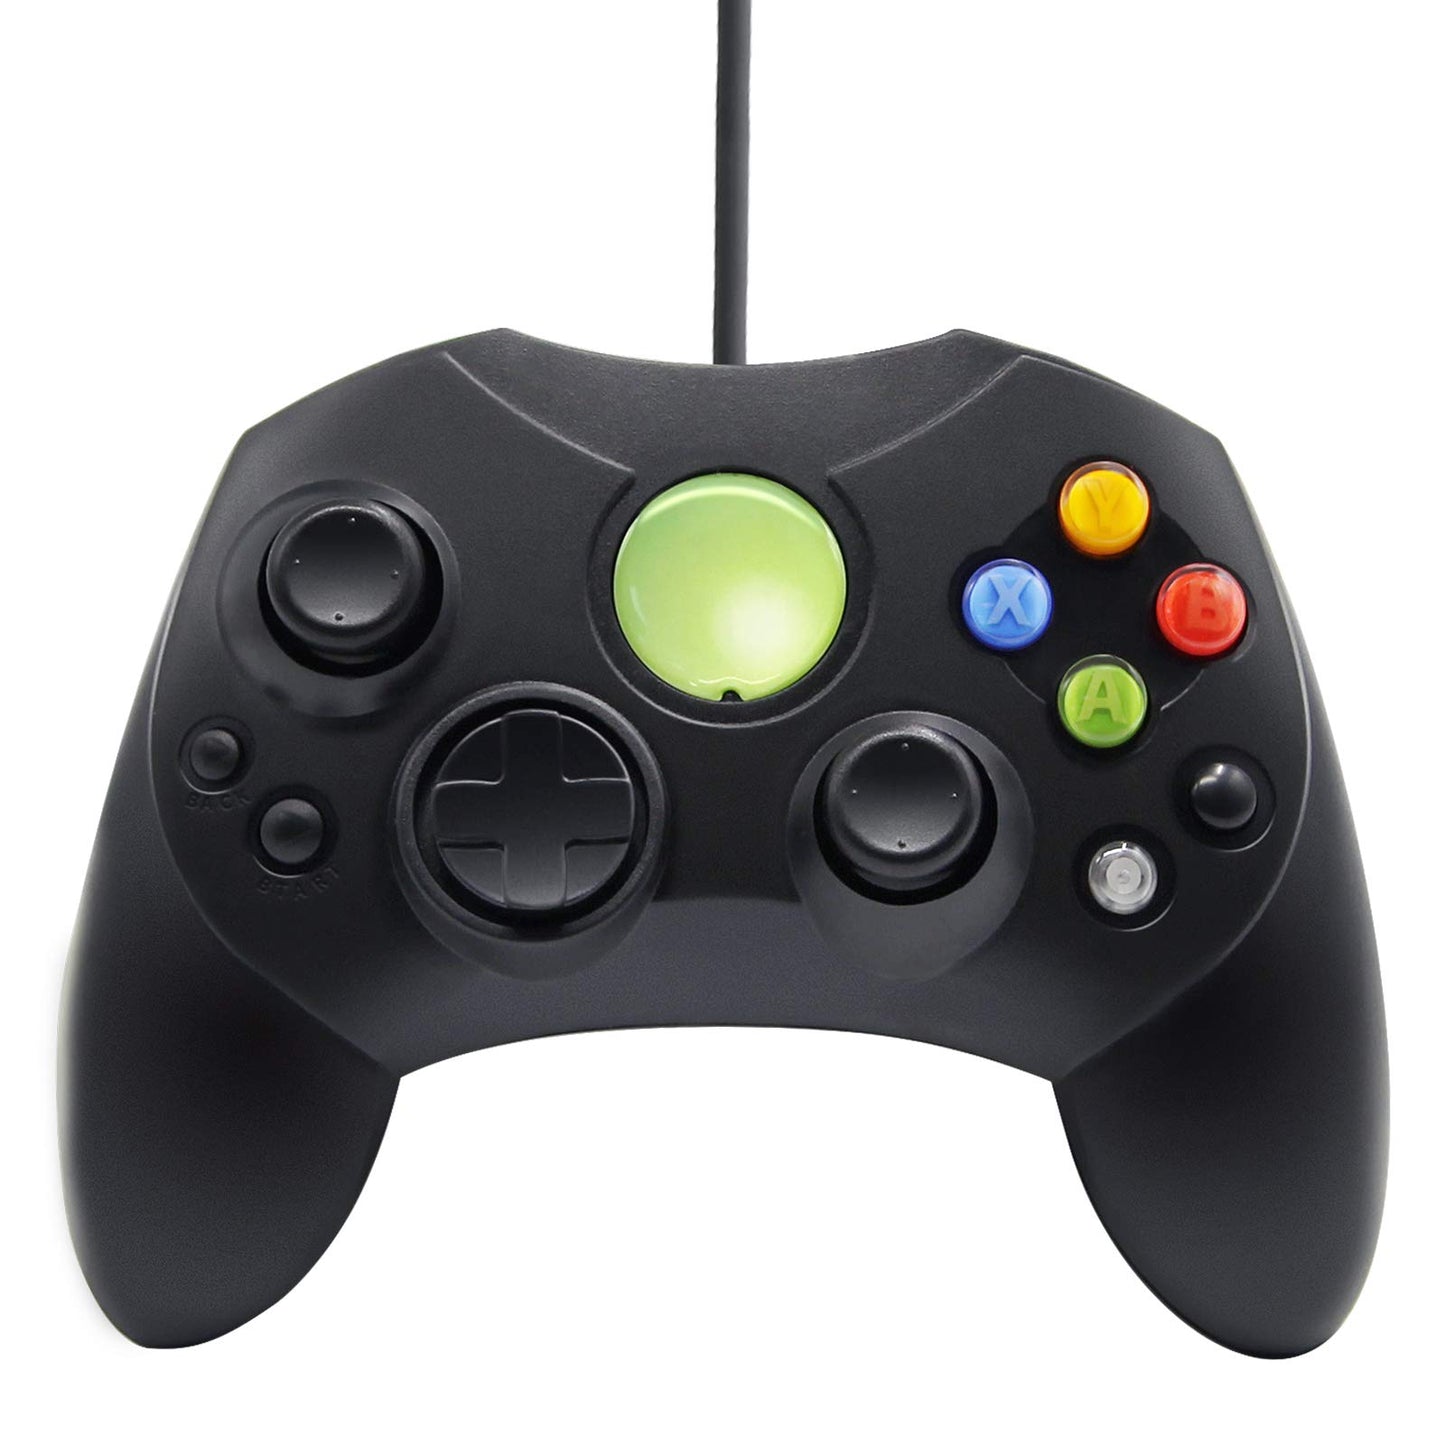 Controlador de juegos Xbox del mercado de accesorios (Xbox)